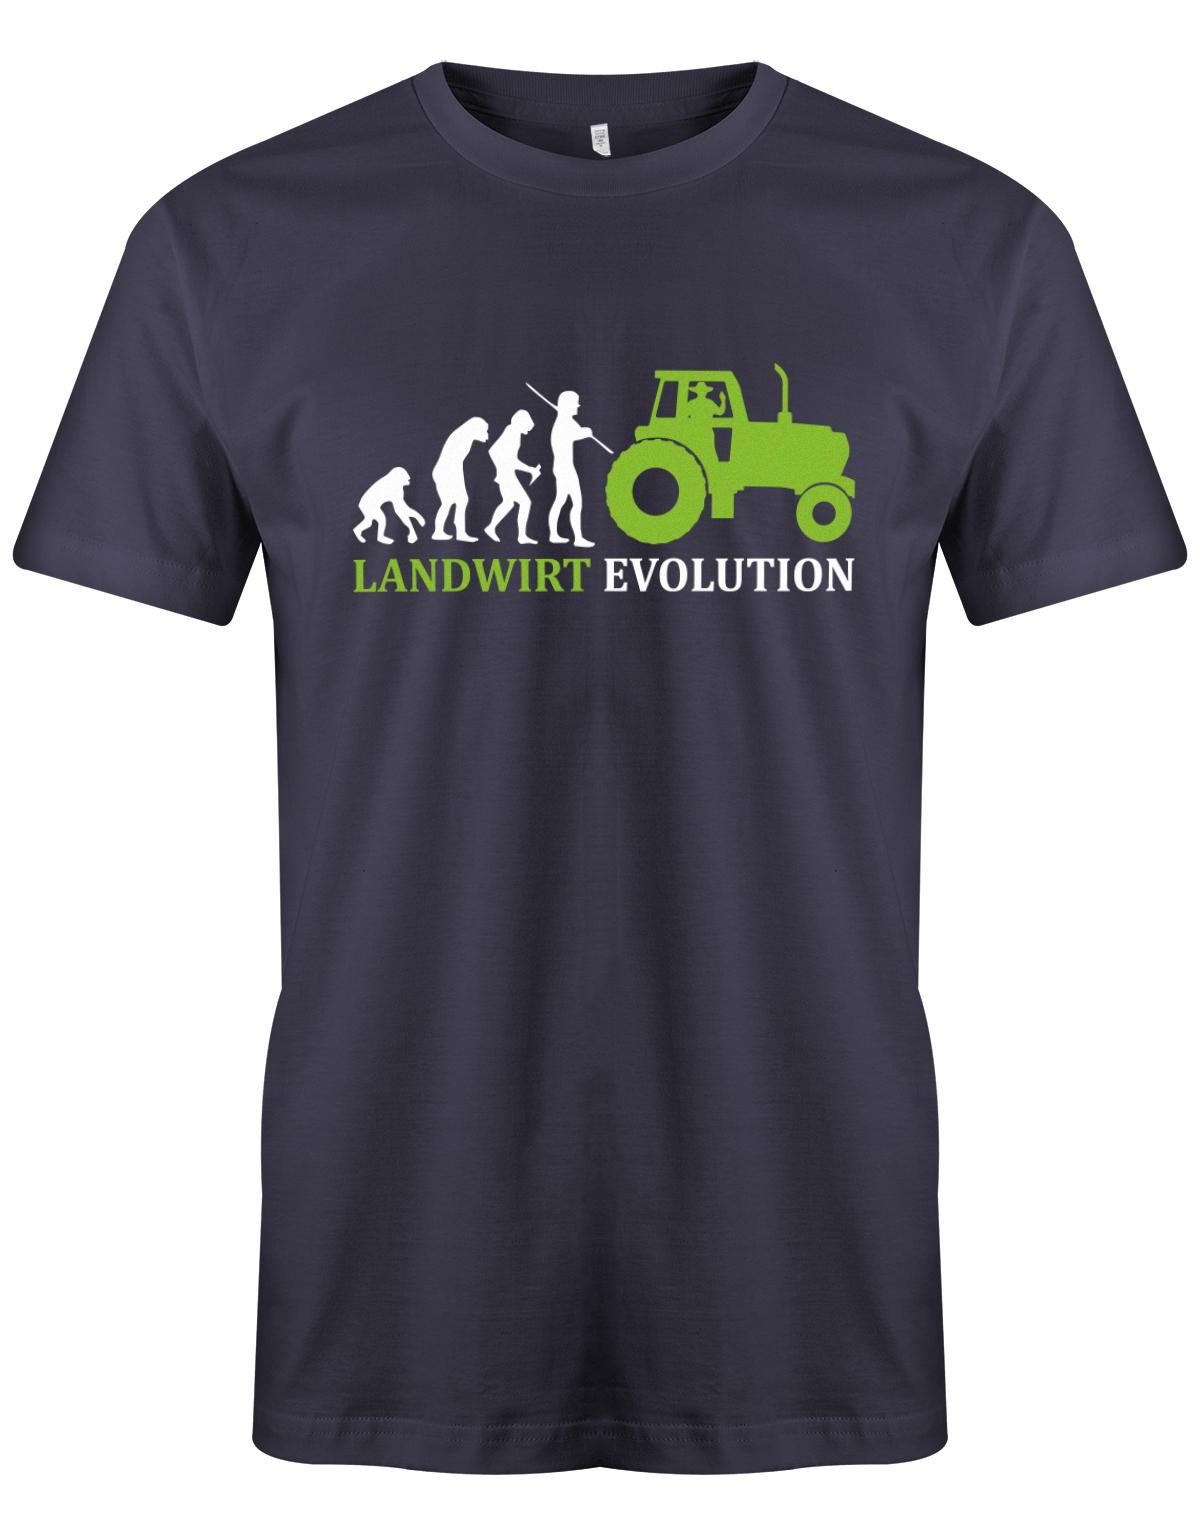 Landwirtschaft Shirt Männer - Landwirt Evolution Navy